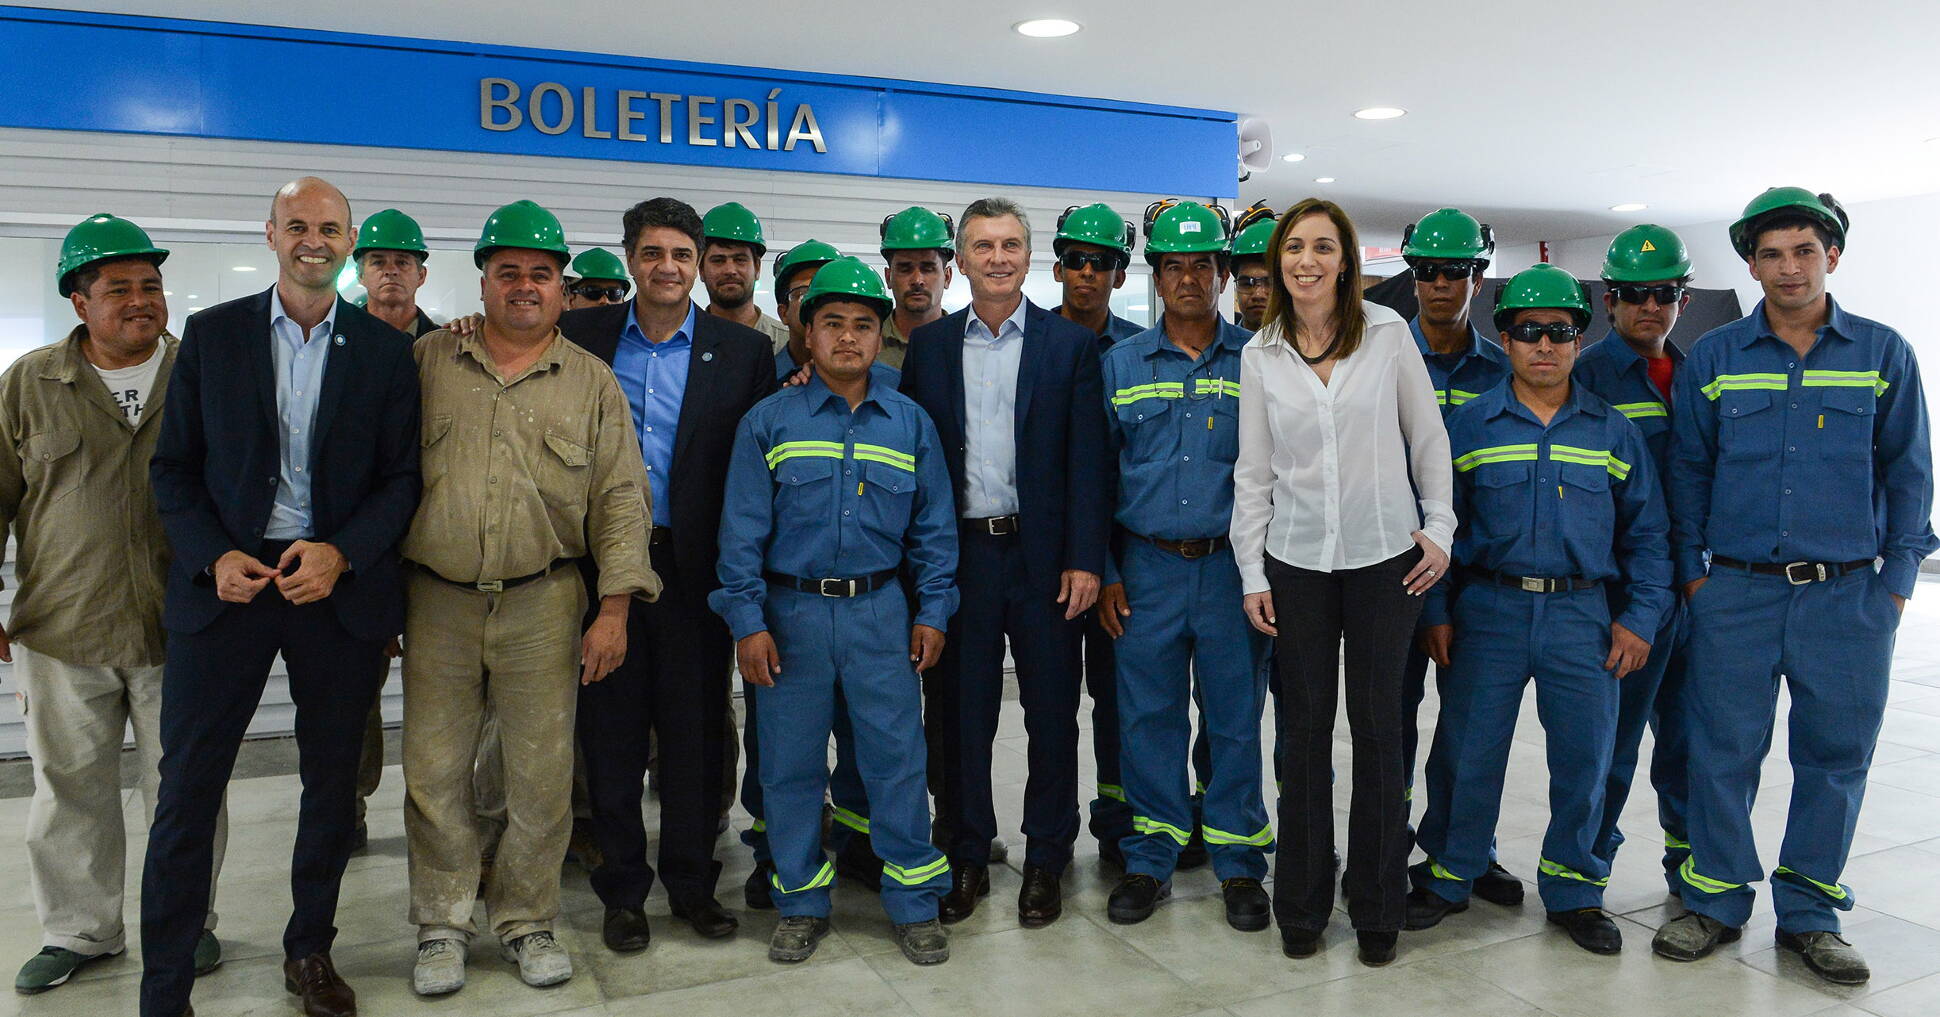 El presidente Macri presentó las obras de remodelación de la estación Aristóbulo del Valle